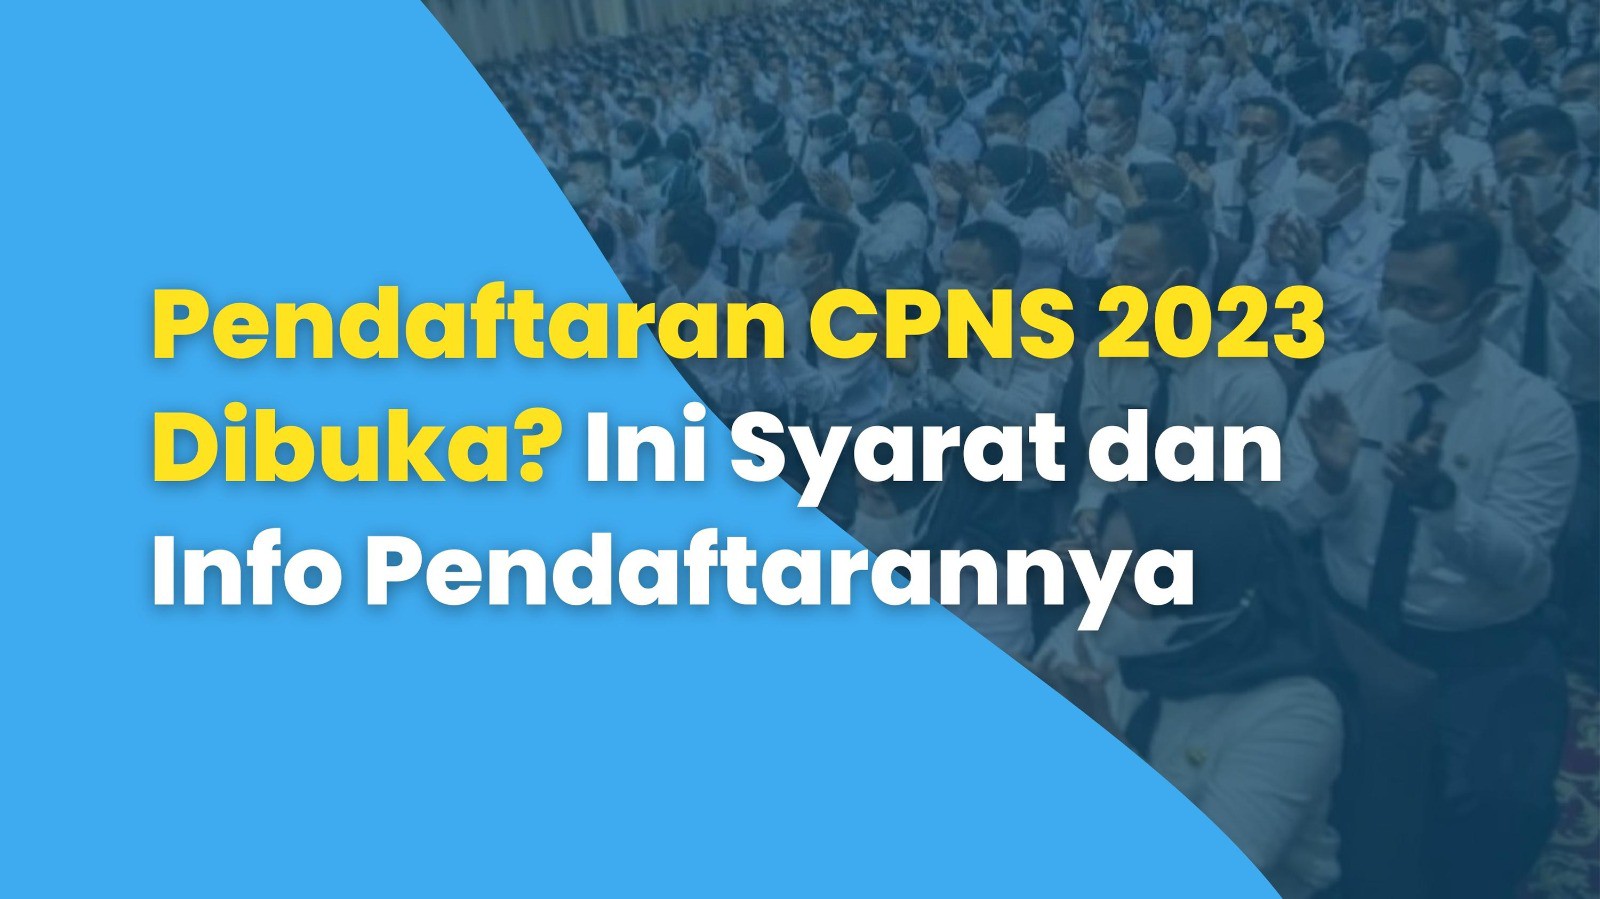 Pendaftaran CPNS 2023 Dibuka? Ini Informasi Lengkap dengan Persyaratan Pendaftaran